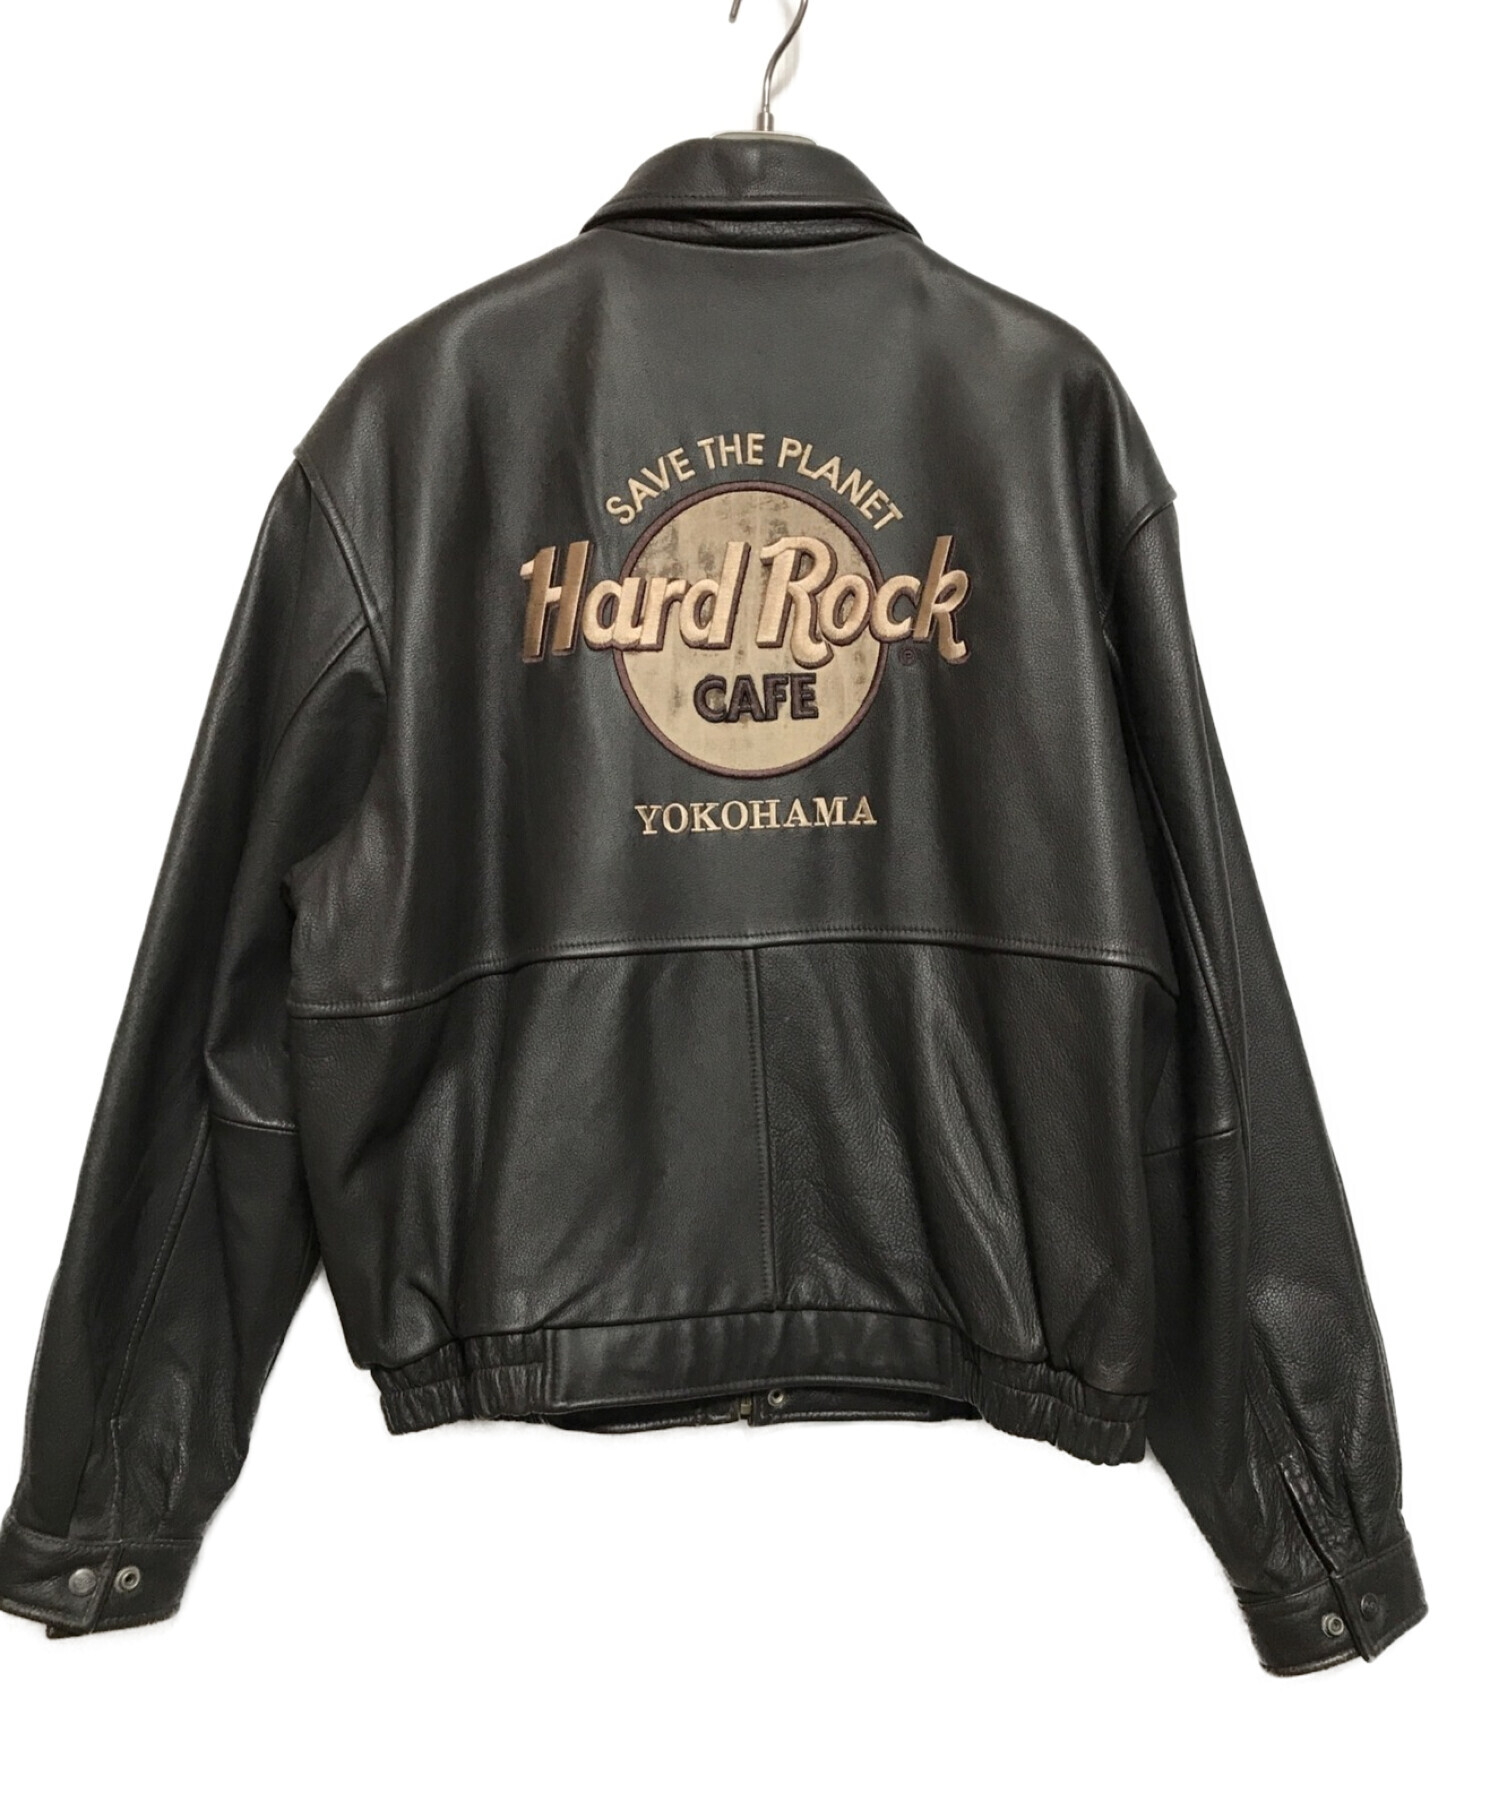 Hard Rock cafe (ハードロックカフェ) レザージャケット ブラウン サイズ:L(下記参照)